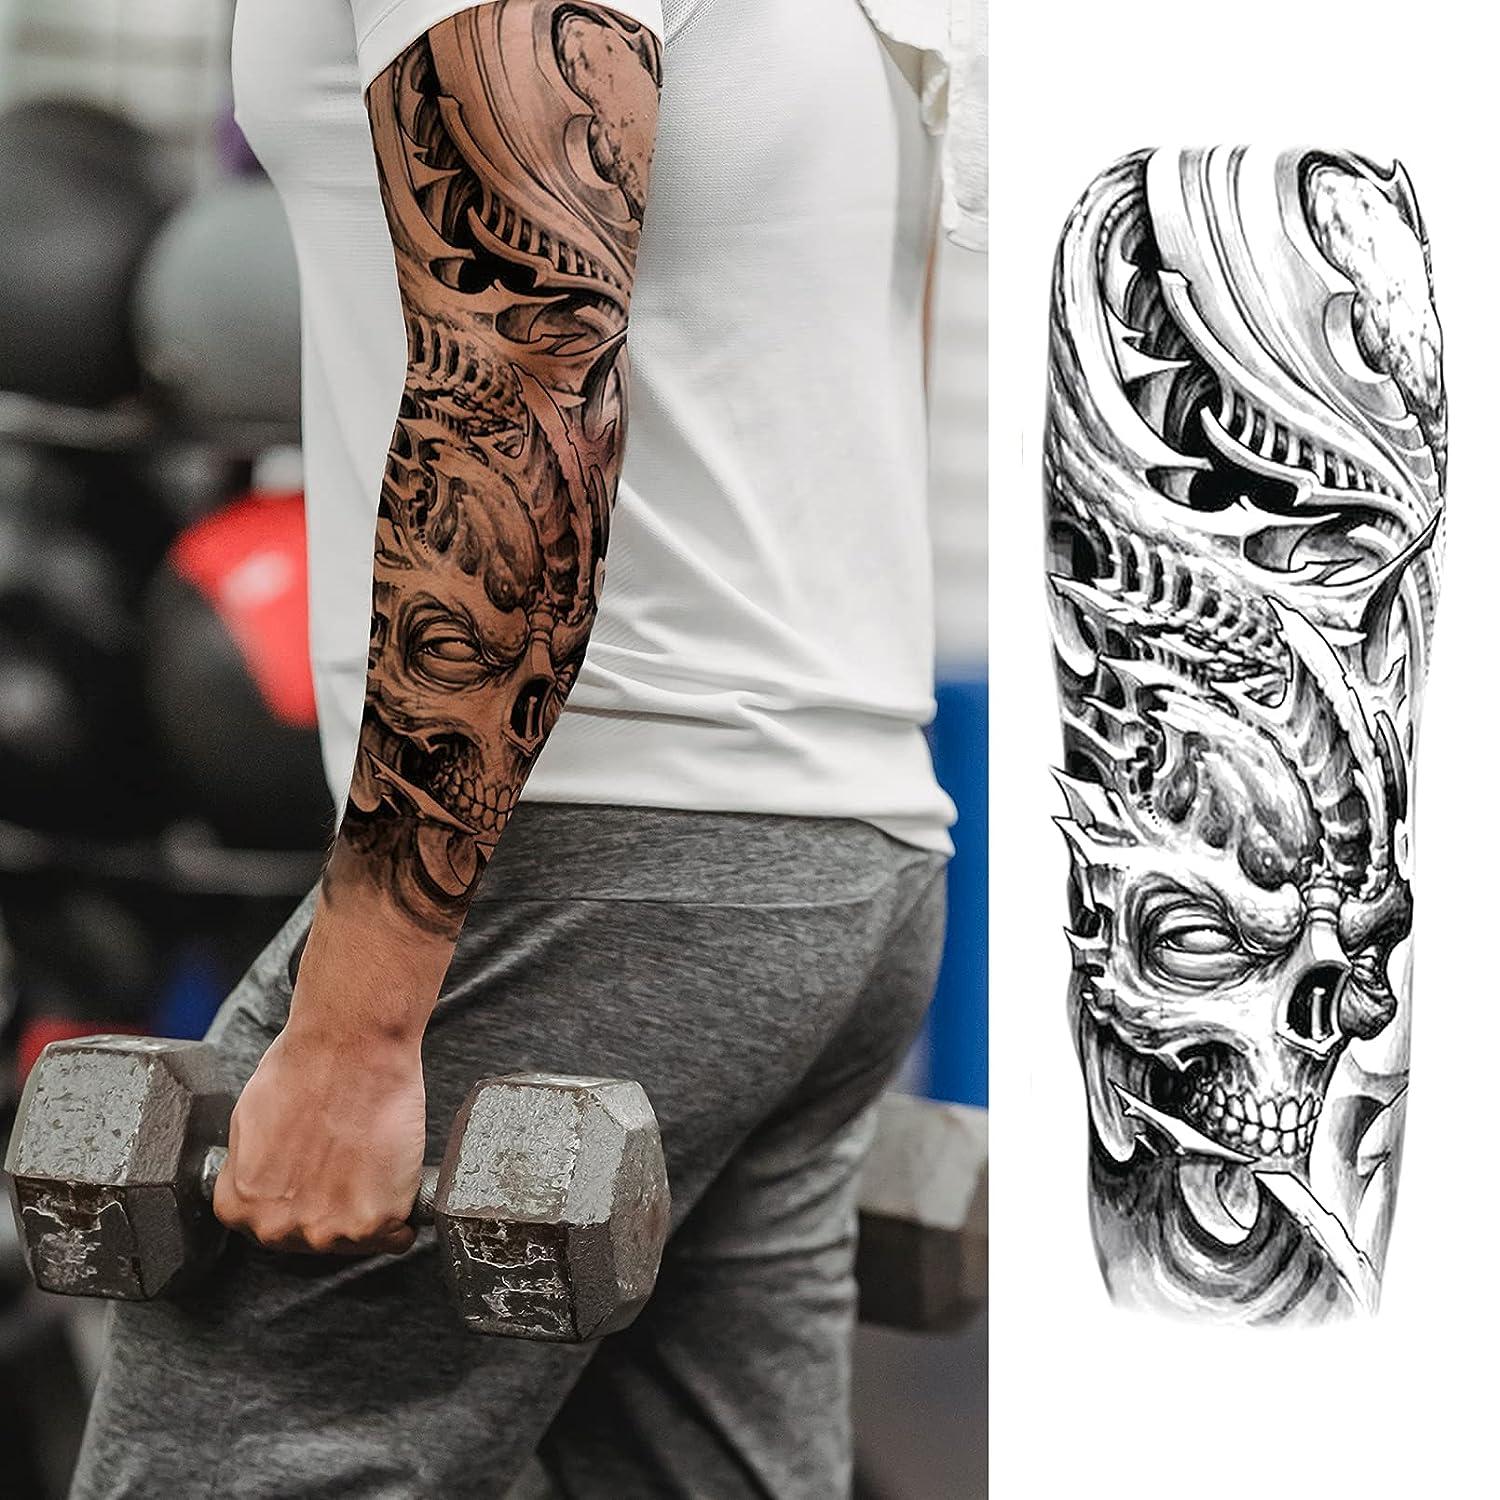 Husband's future full sleeve | Arm sleeve tattoos, Full sleeve tattoos, Full  sleeve tattoo design